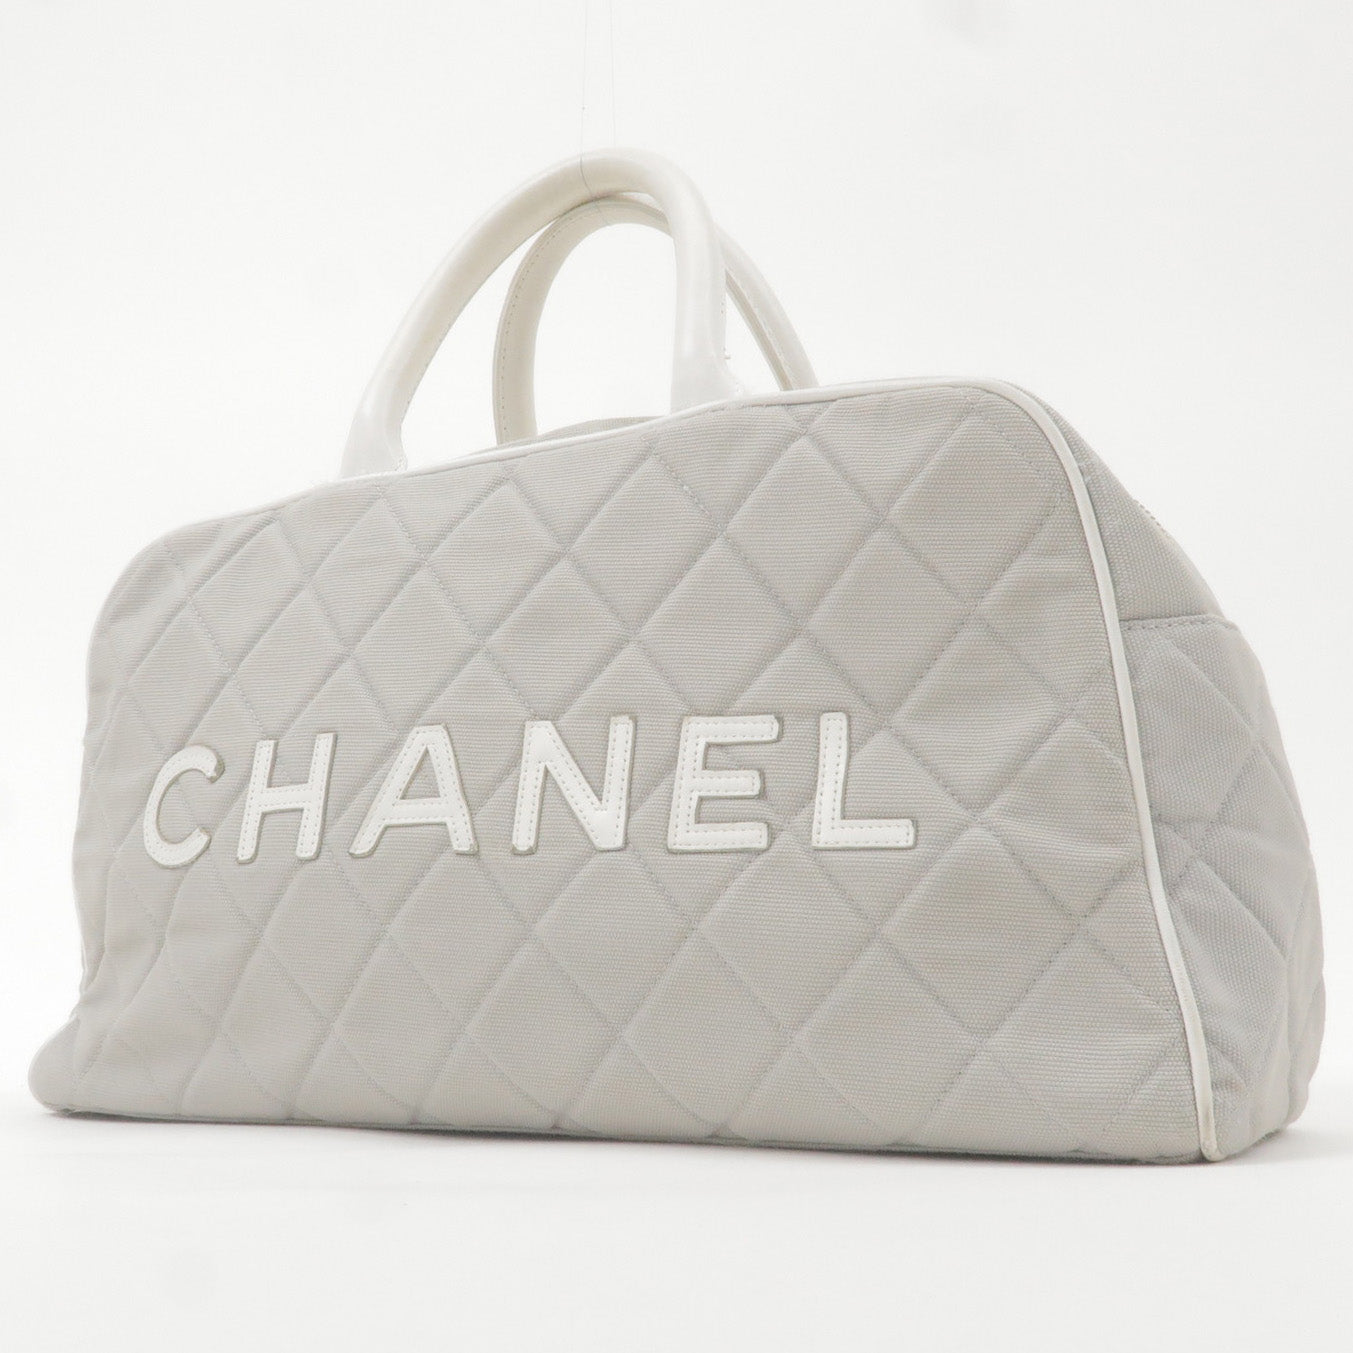 CHANEL, Bags, Chanel Sport Line Shoulder Bag Black Canvas